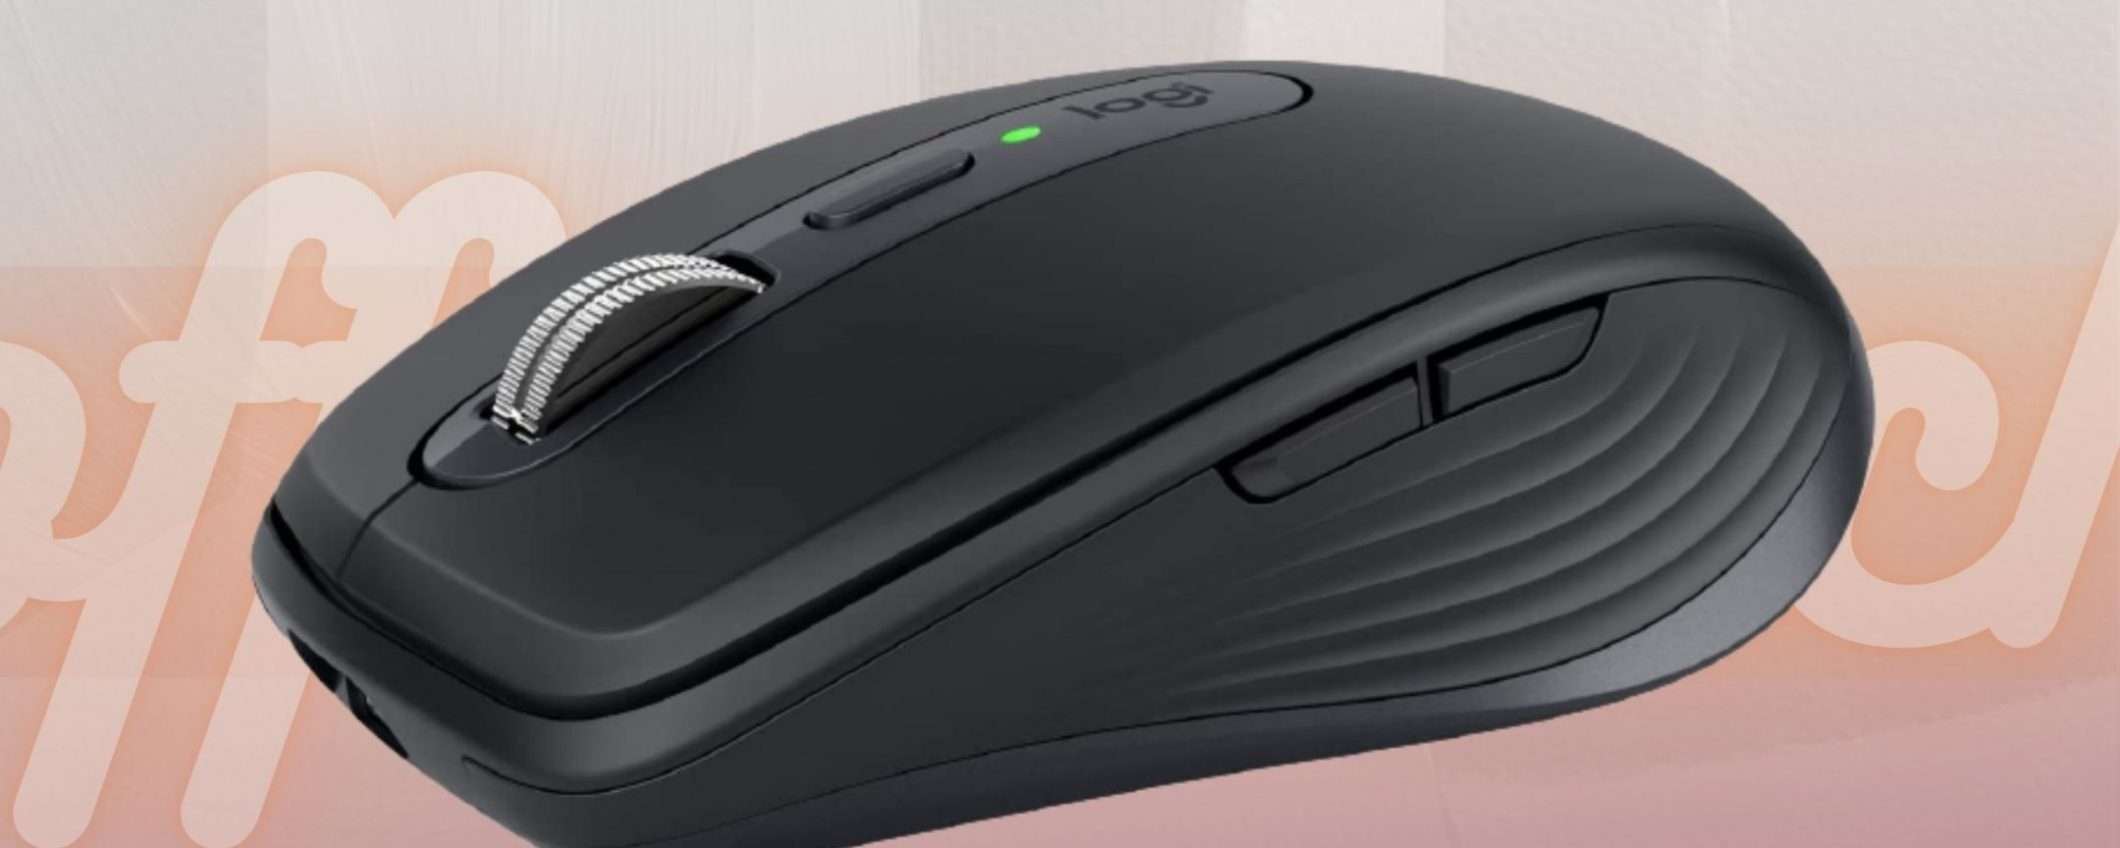 Logitech MX Anywhere 3: il mouse wireless compatto che cercavi